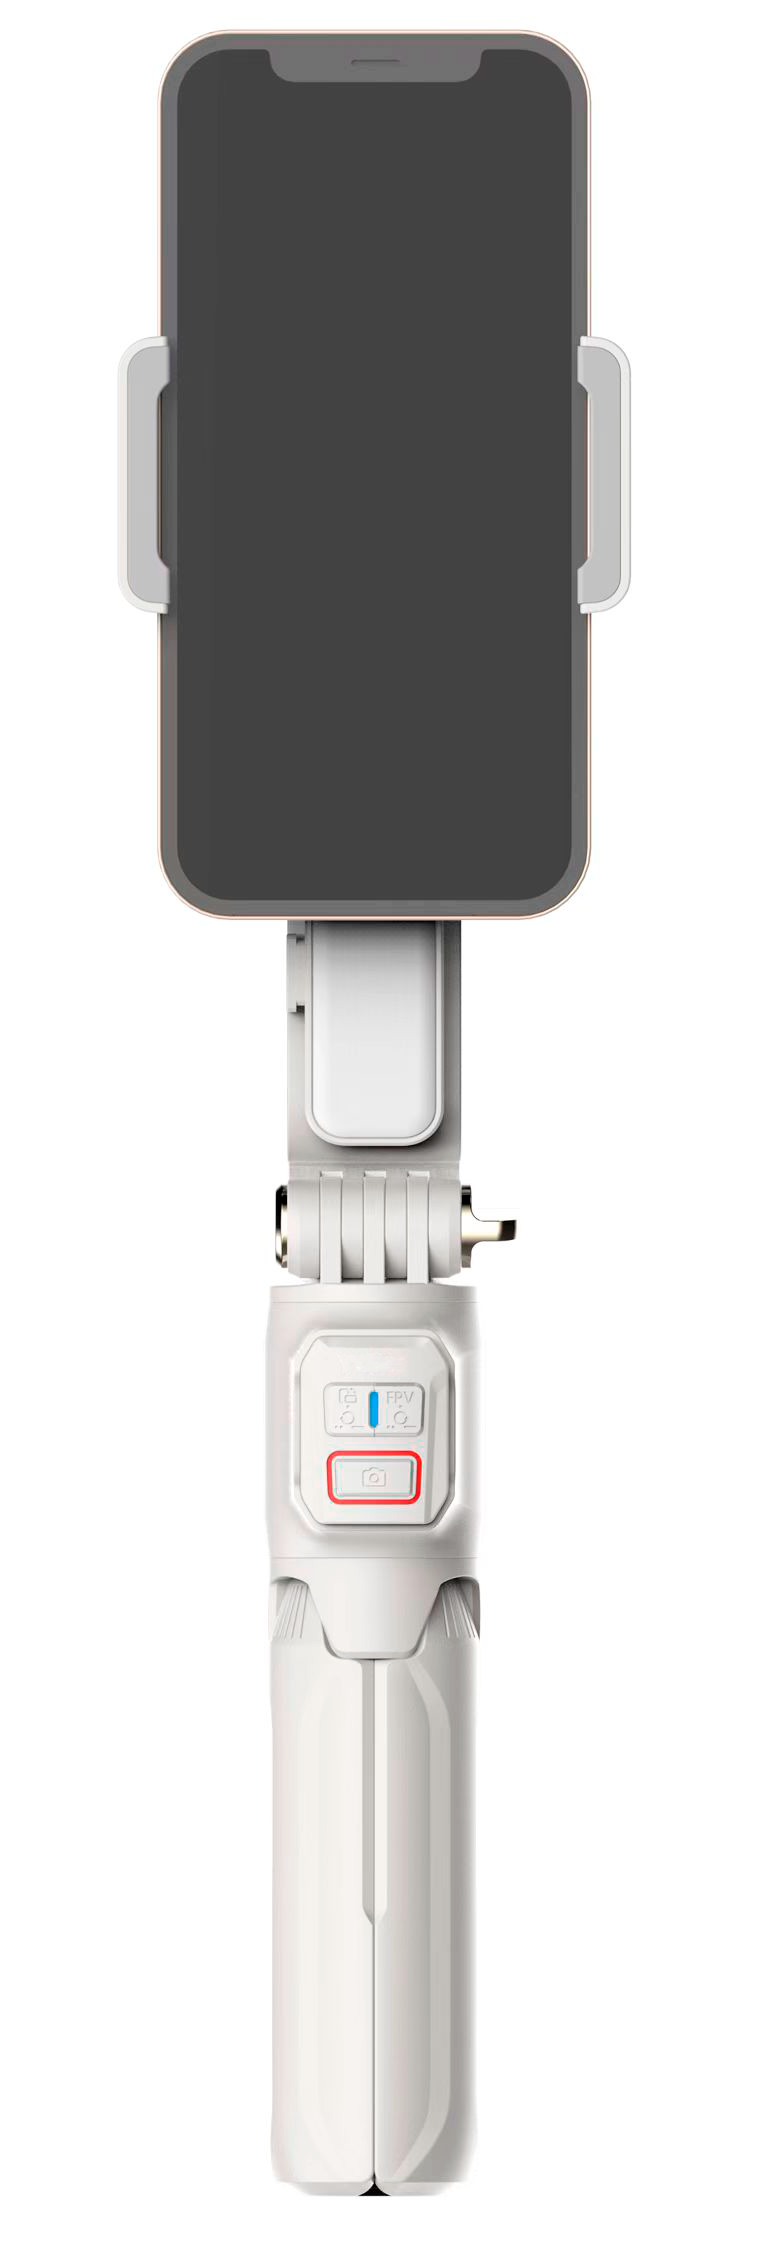 Стабилизатор для смартфона GimbalPro A10 White, Стабилизаторы и штативы 